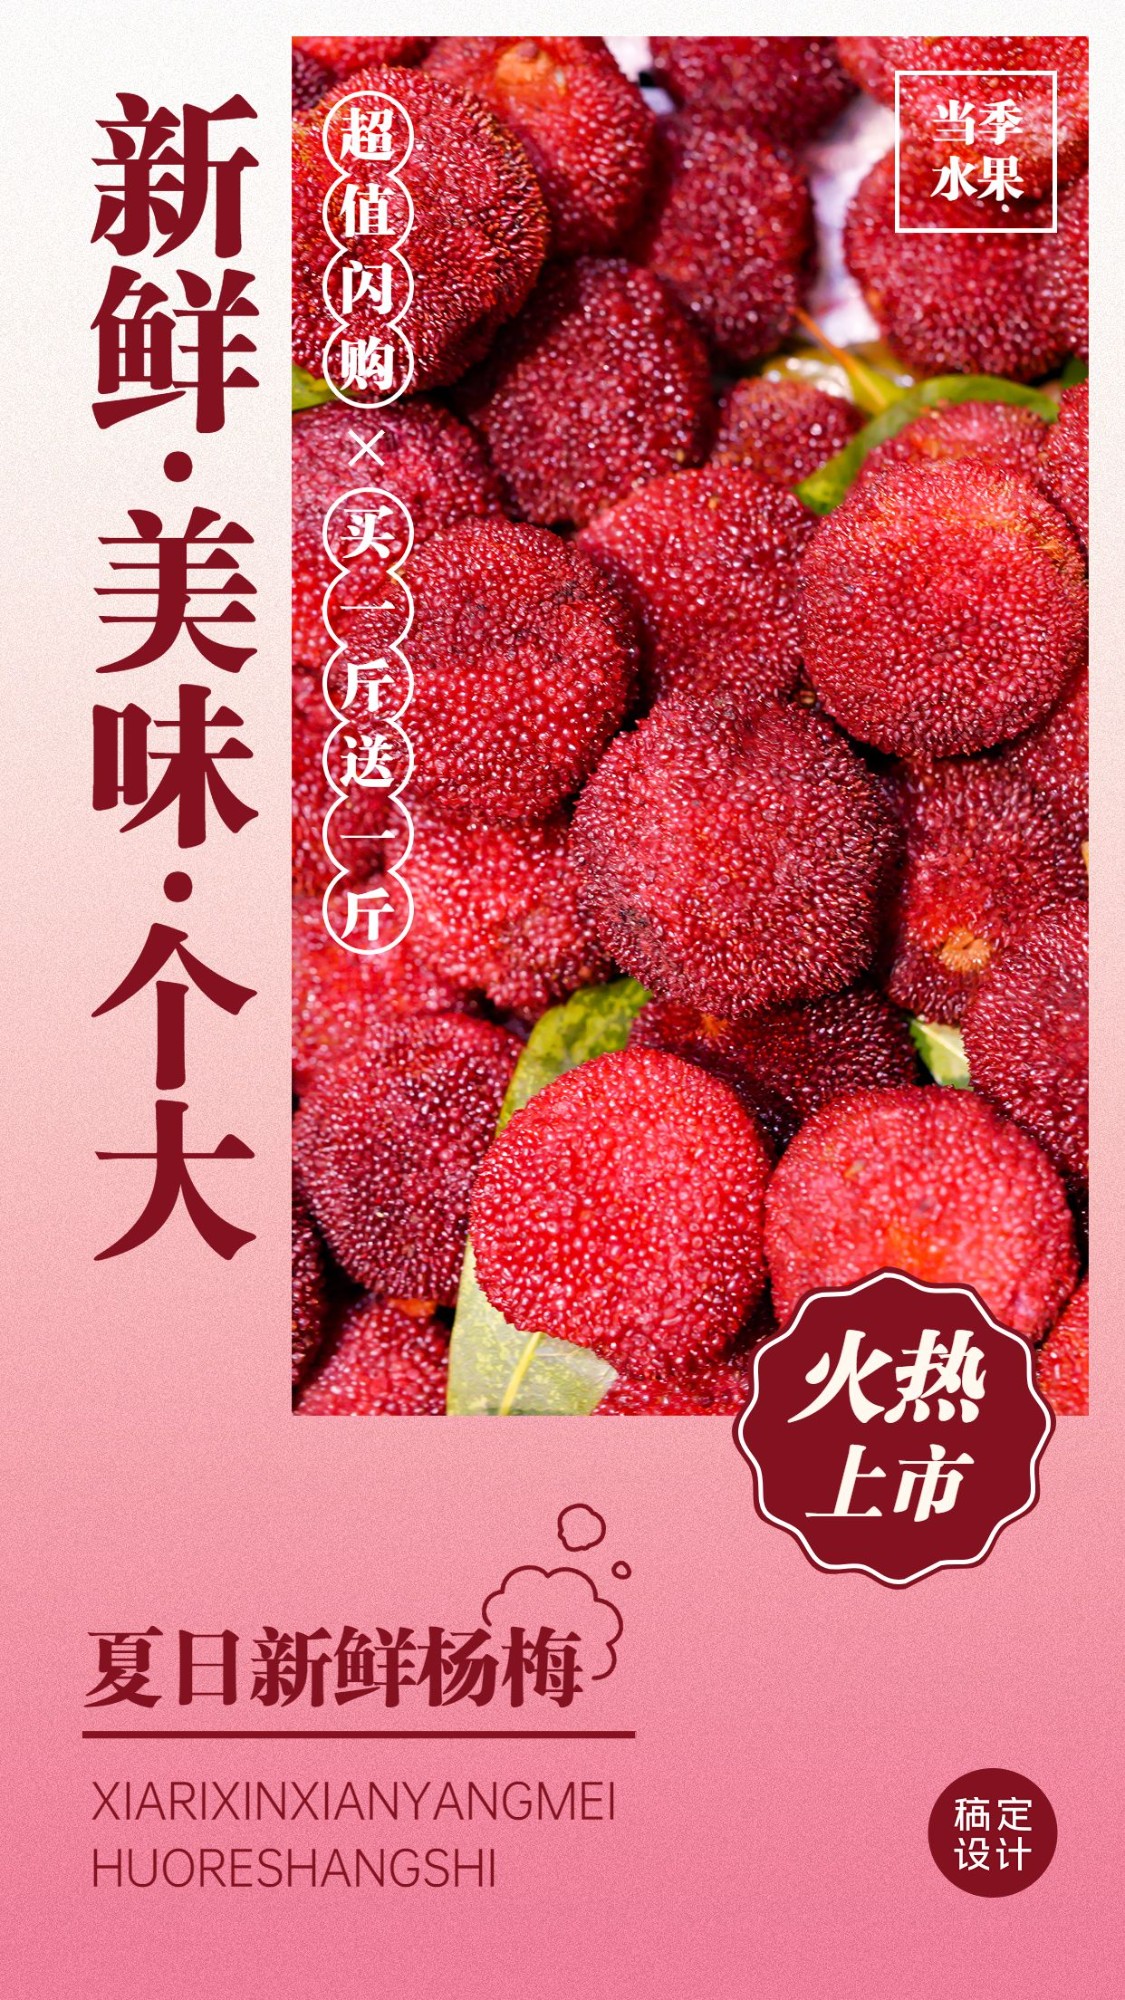 食品生鲜水果杨梅产品展示竖版海报预览效果